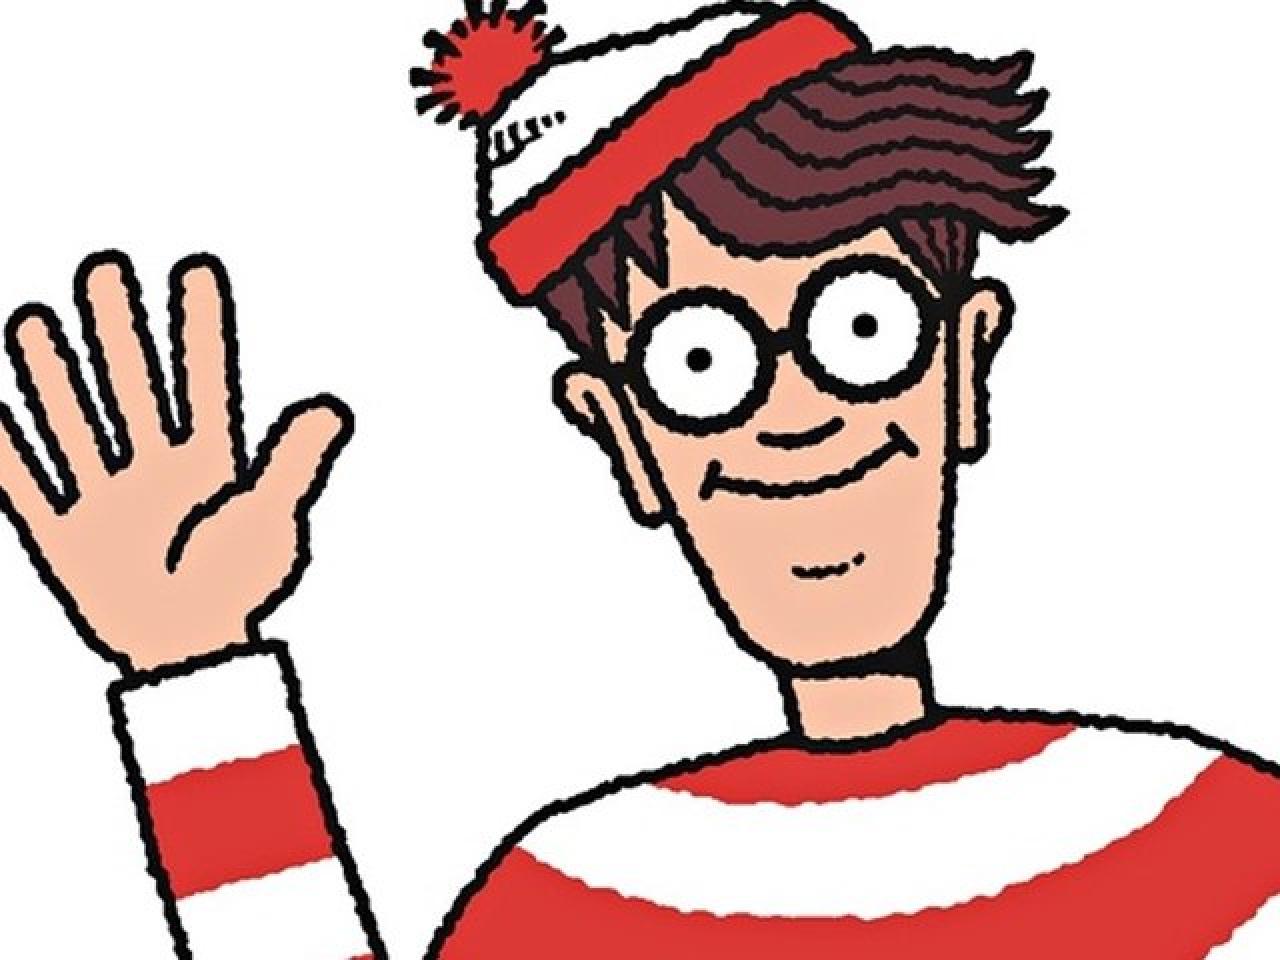 Descubre el mundo de Waldo y sus entretenidos libros de búsqueda